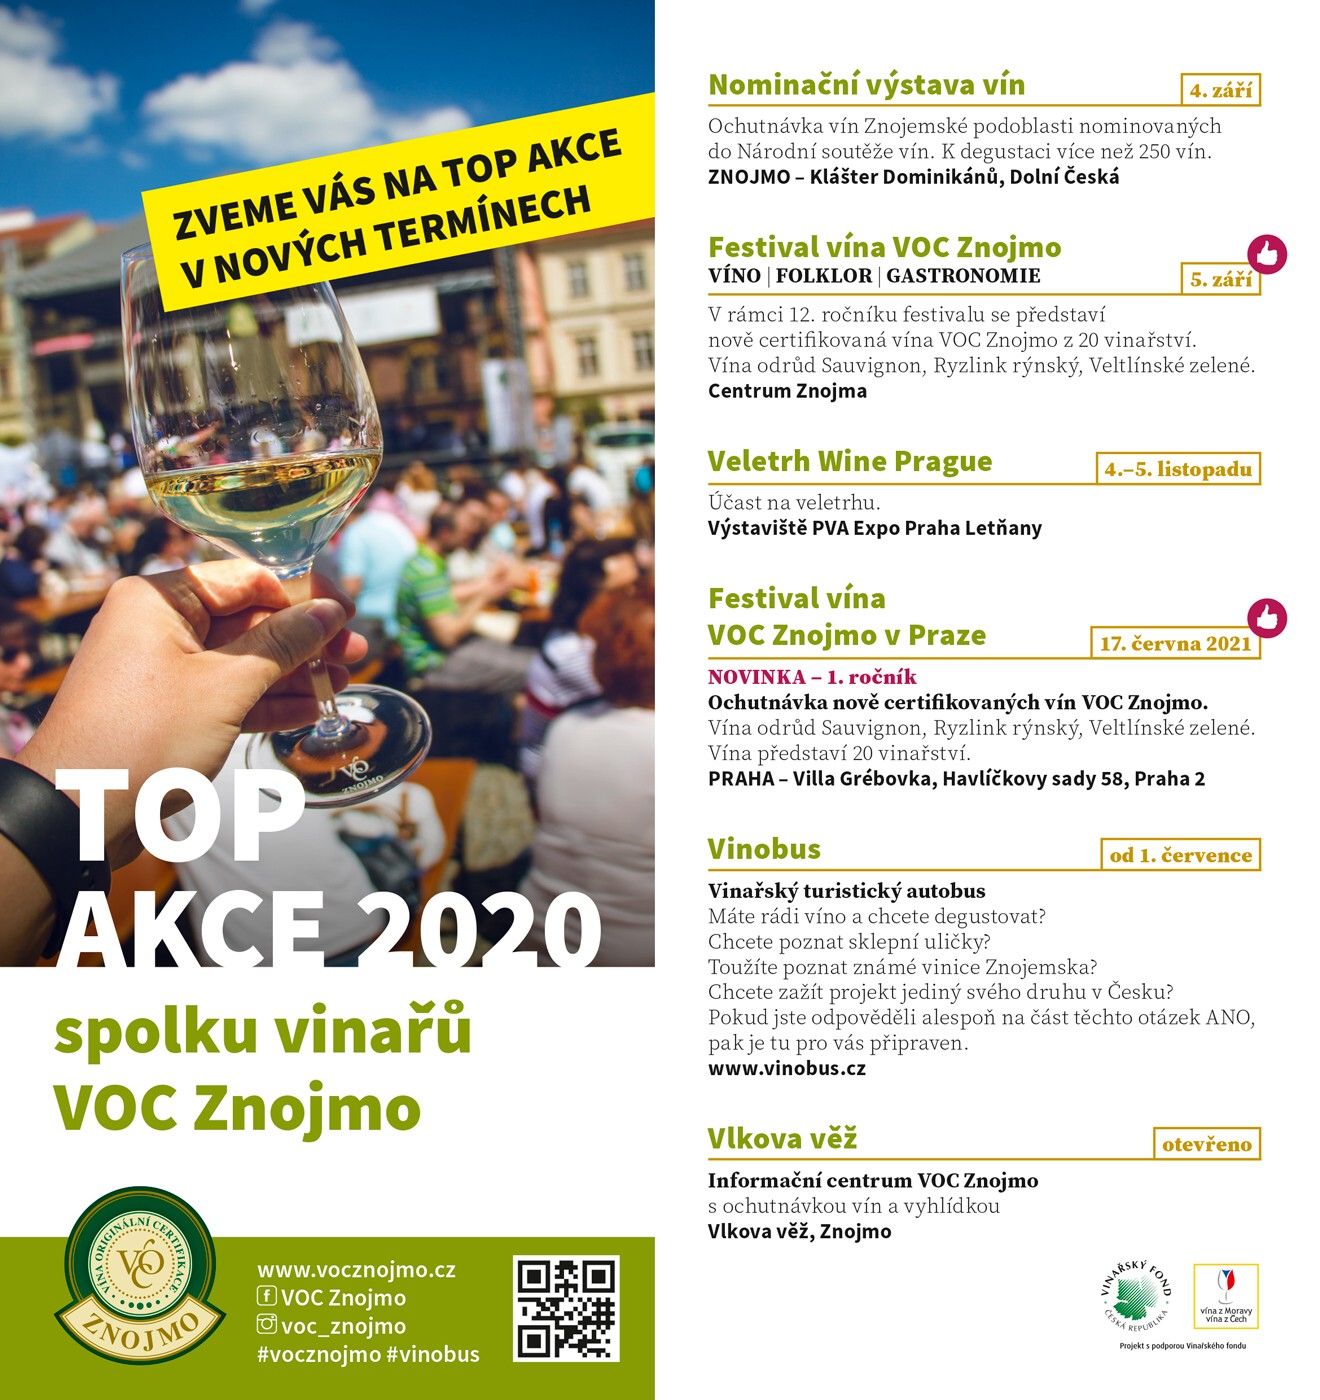 Rok 2020 s VOC Znojmo s novými termíny. Konat se bude i tradiční festival vín